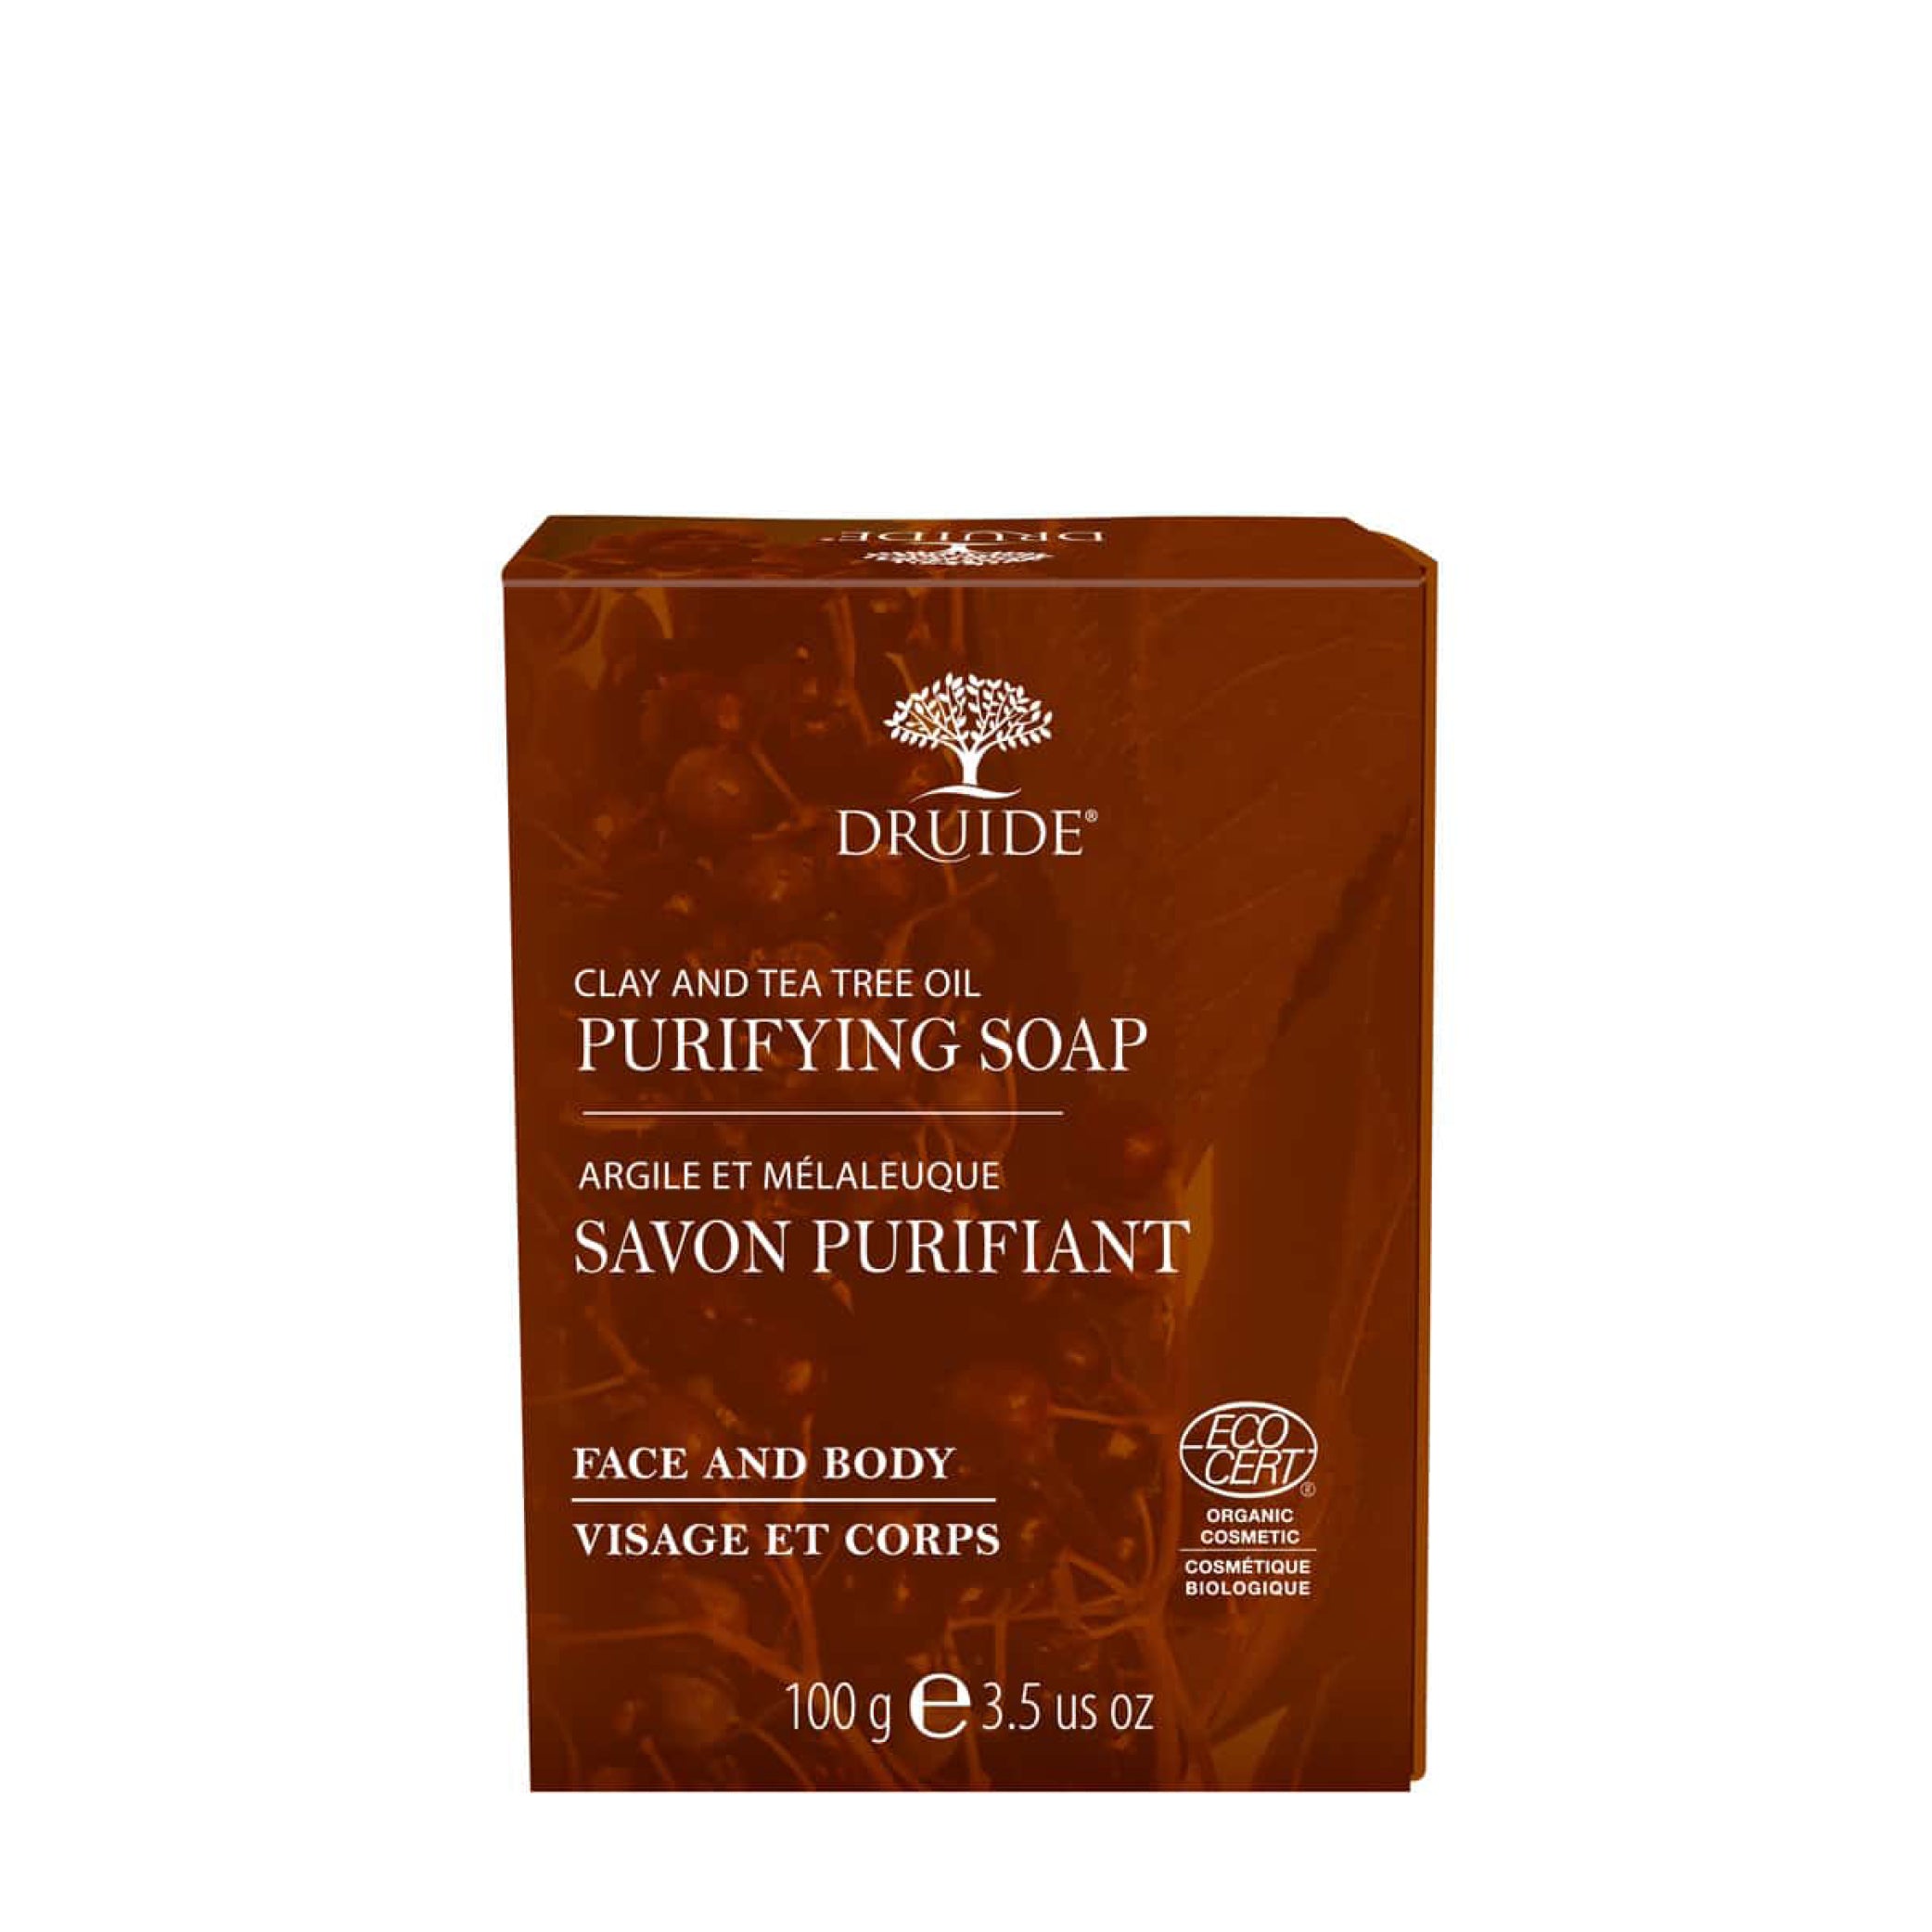 Purifying Soap (Clay & Tea Tree Oil)